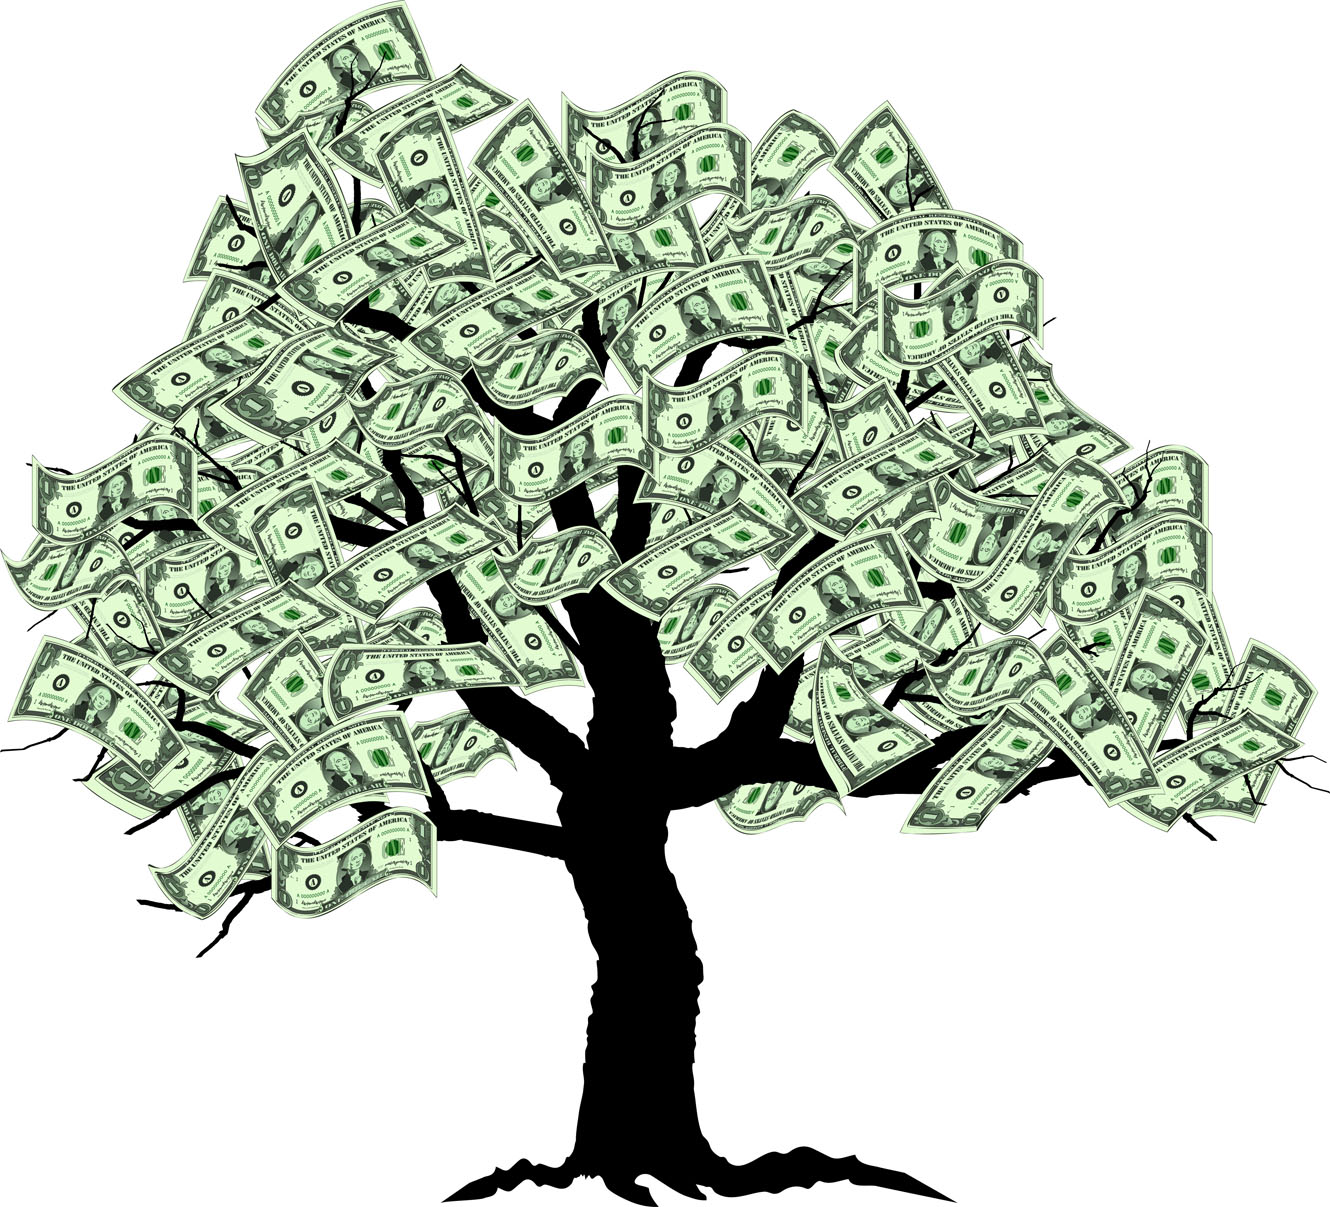 http://aarongleeman.com/wp-content/uploads/2011/10/money-tree.jpg